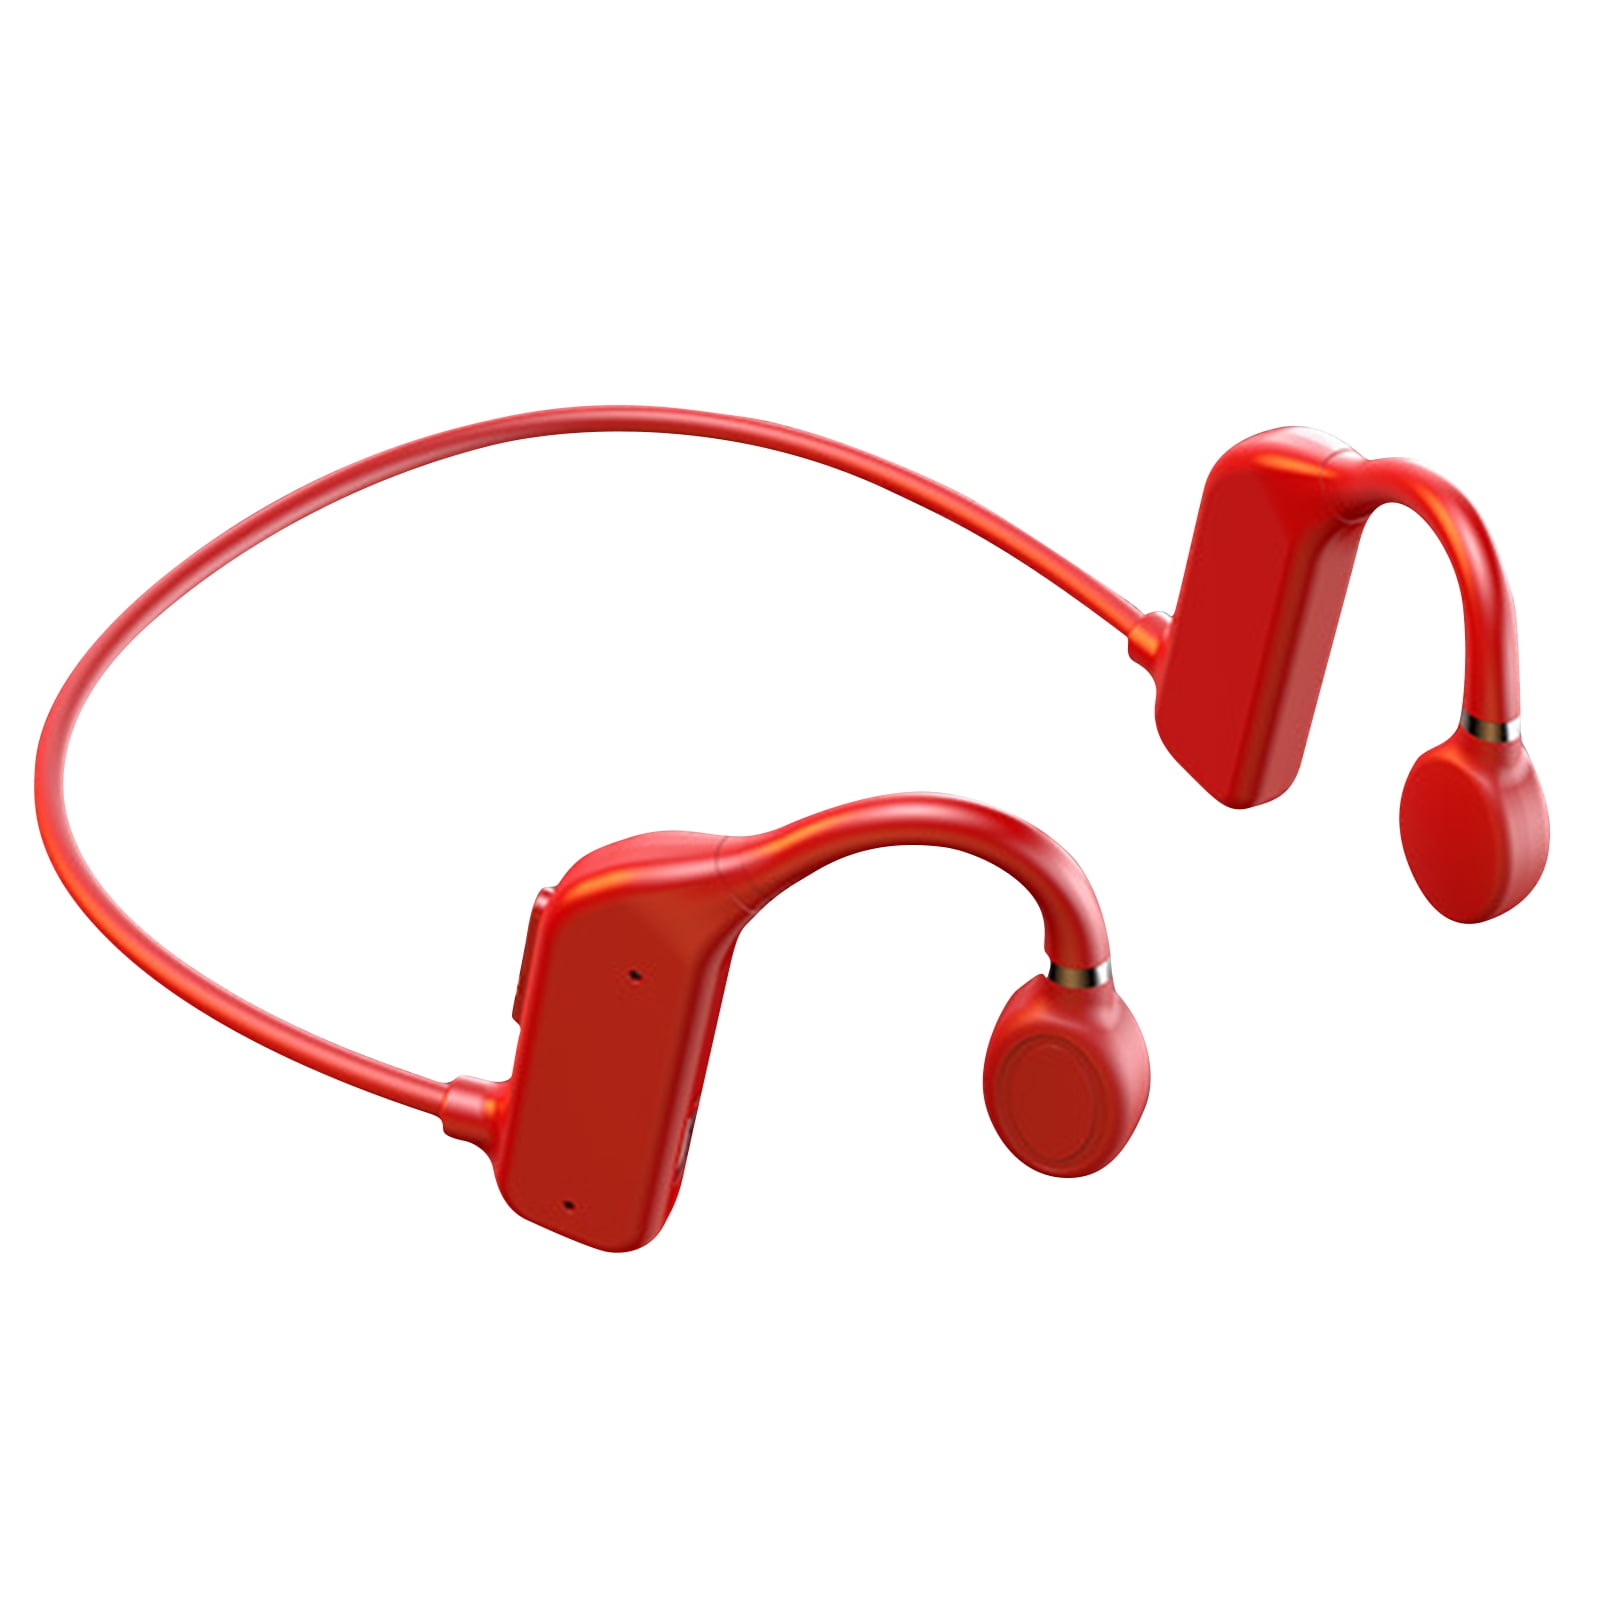 roblox clockwork headphones red